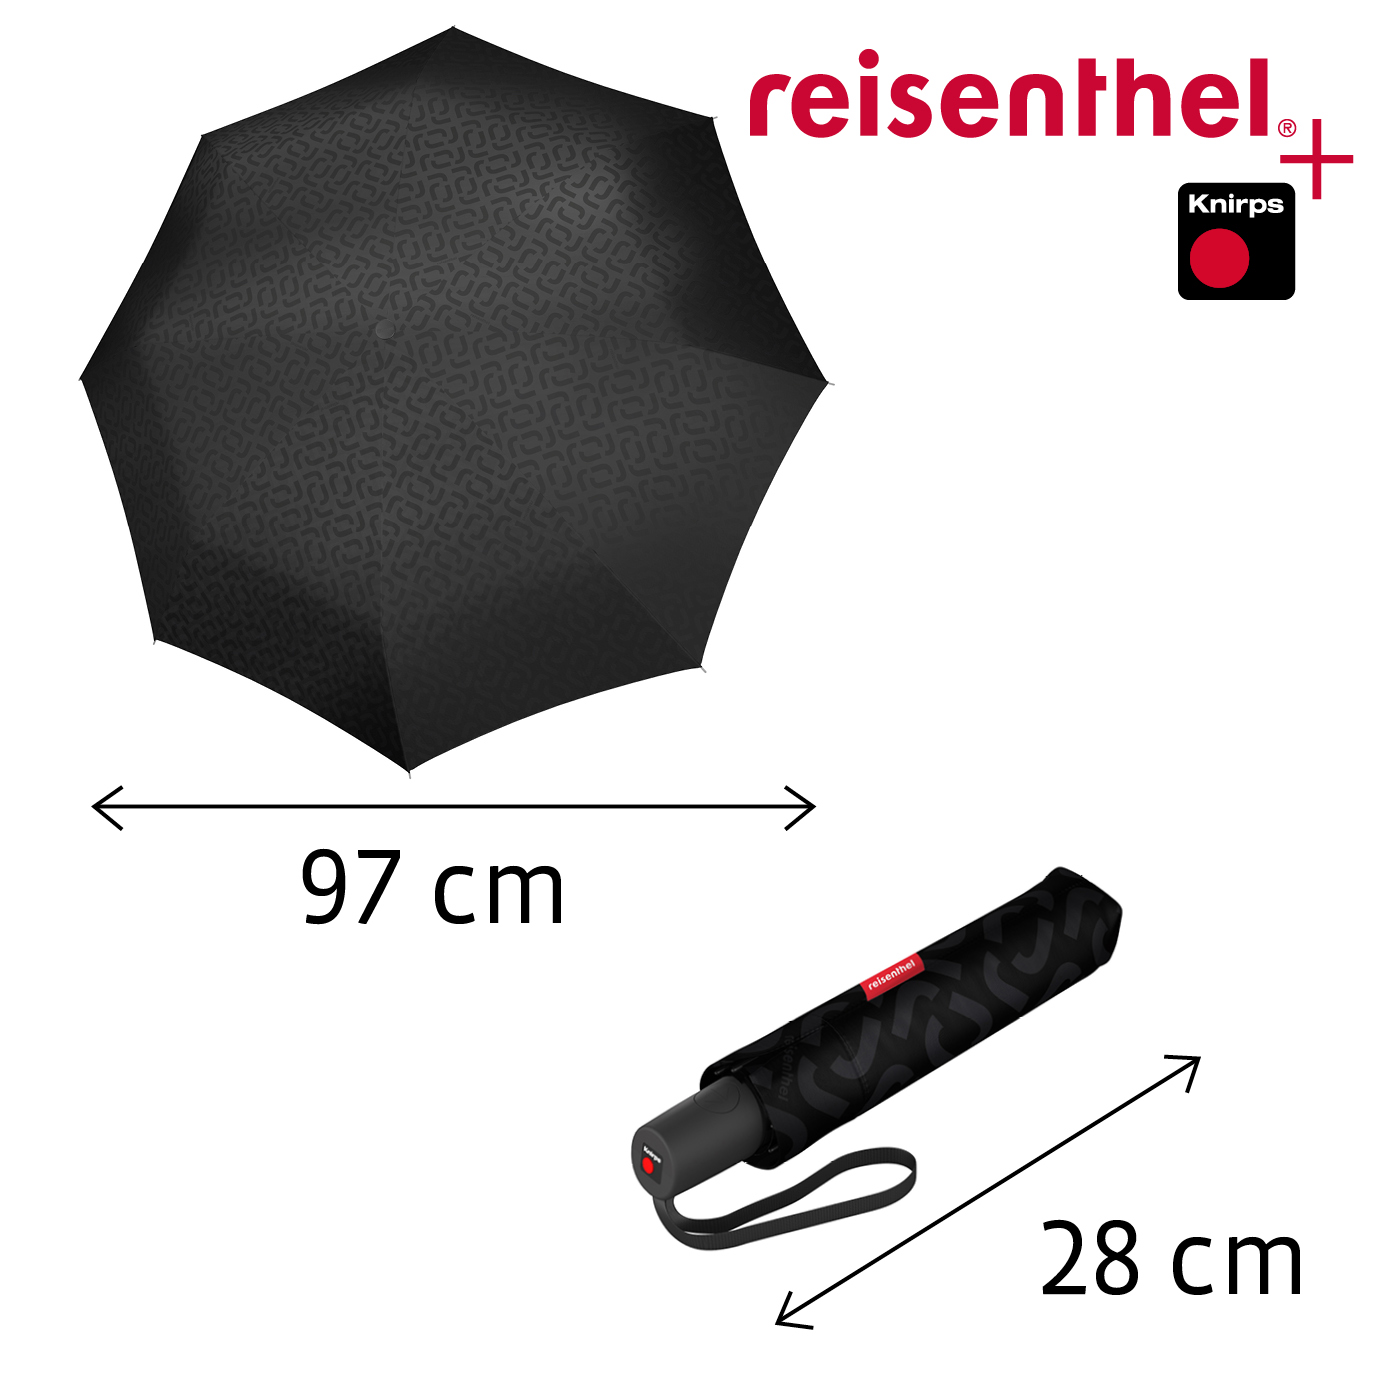 Reisenthel Knirps pocket duomatic Regenschirm signature black hot print |  jetzt online kaufen auf Koffer.de ✓